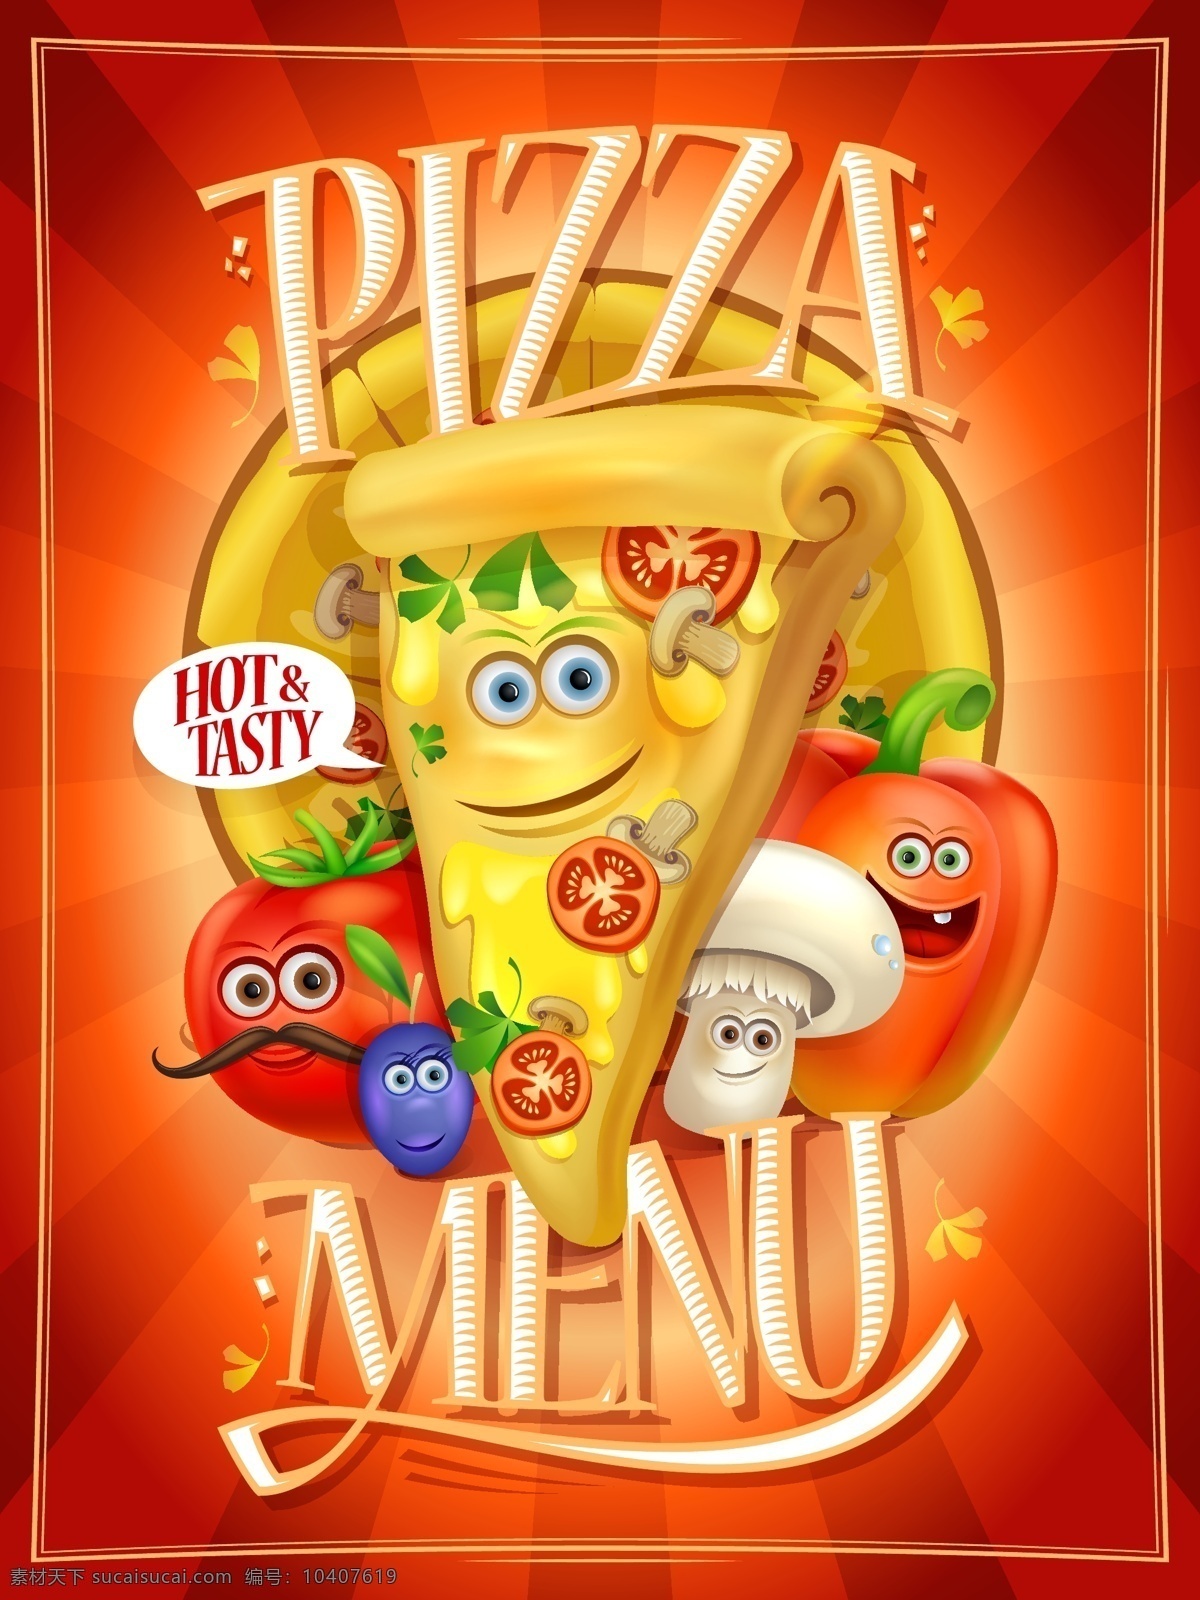 卡哇伊快餐 卡哇伊 可爱 表情 快餐 汉堡 披萨 卡通 海报 背景 有趣 趣味 美食 西餐 饮食 食品蔬菜水果 卡通设计